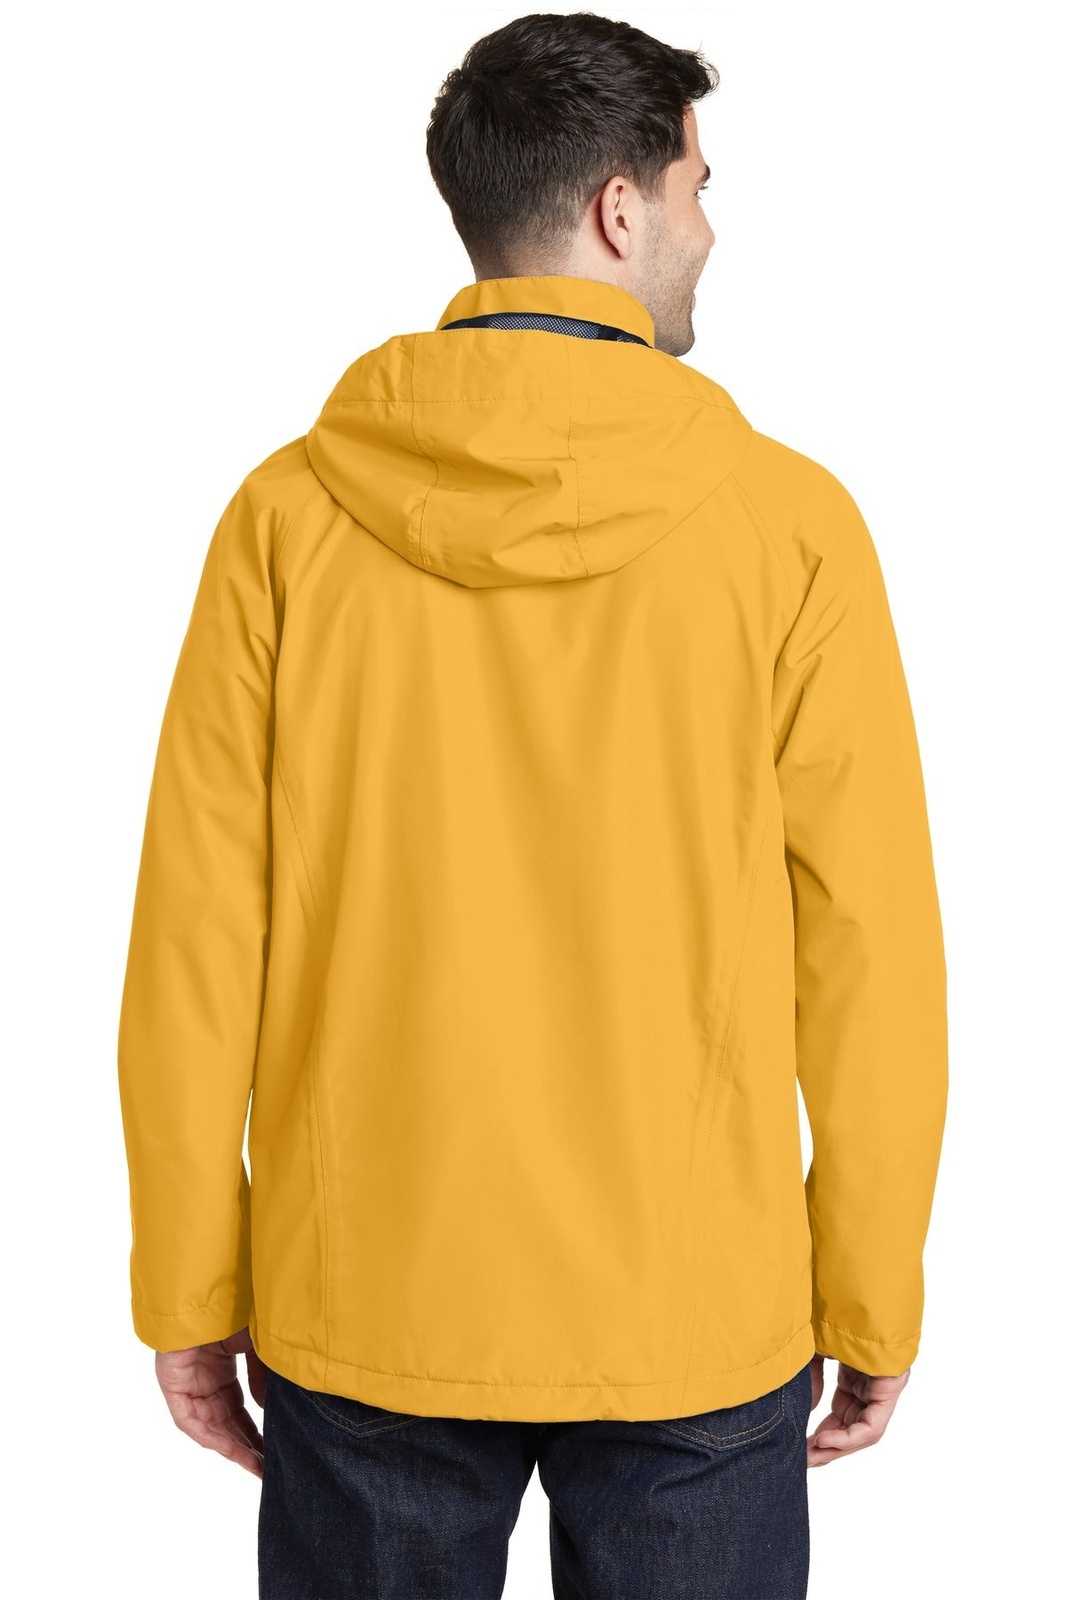 Port Authority J333 Torrent Waterproof Jacket - Slicker Yellow - HIT a Double - 2